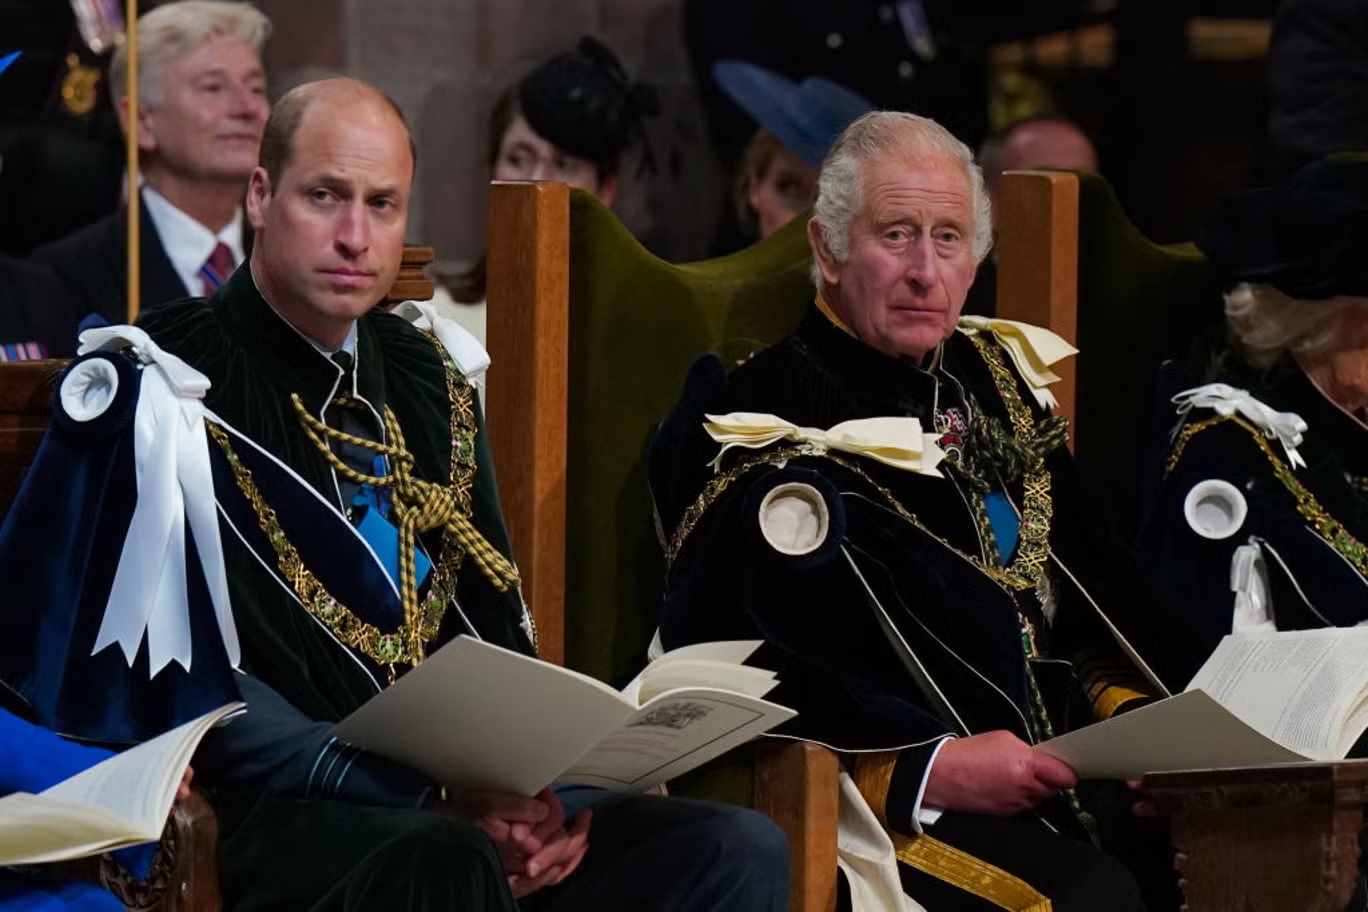 يظهر الملك تشارلز كشخصية أكثر دفئاً من ابنه سريع الغضب ووريثه الأمير وليام (غيتي)